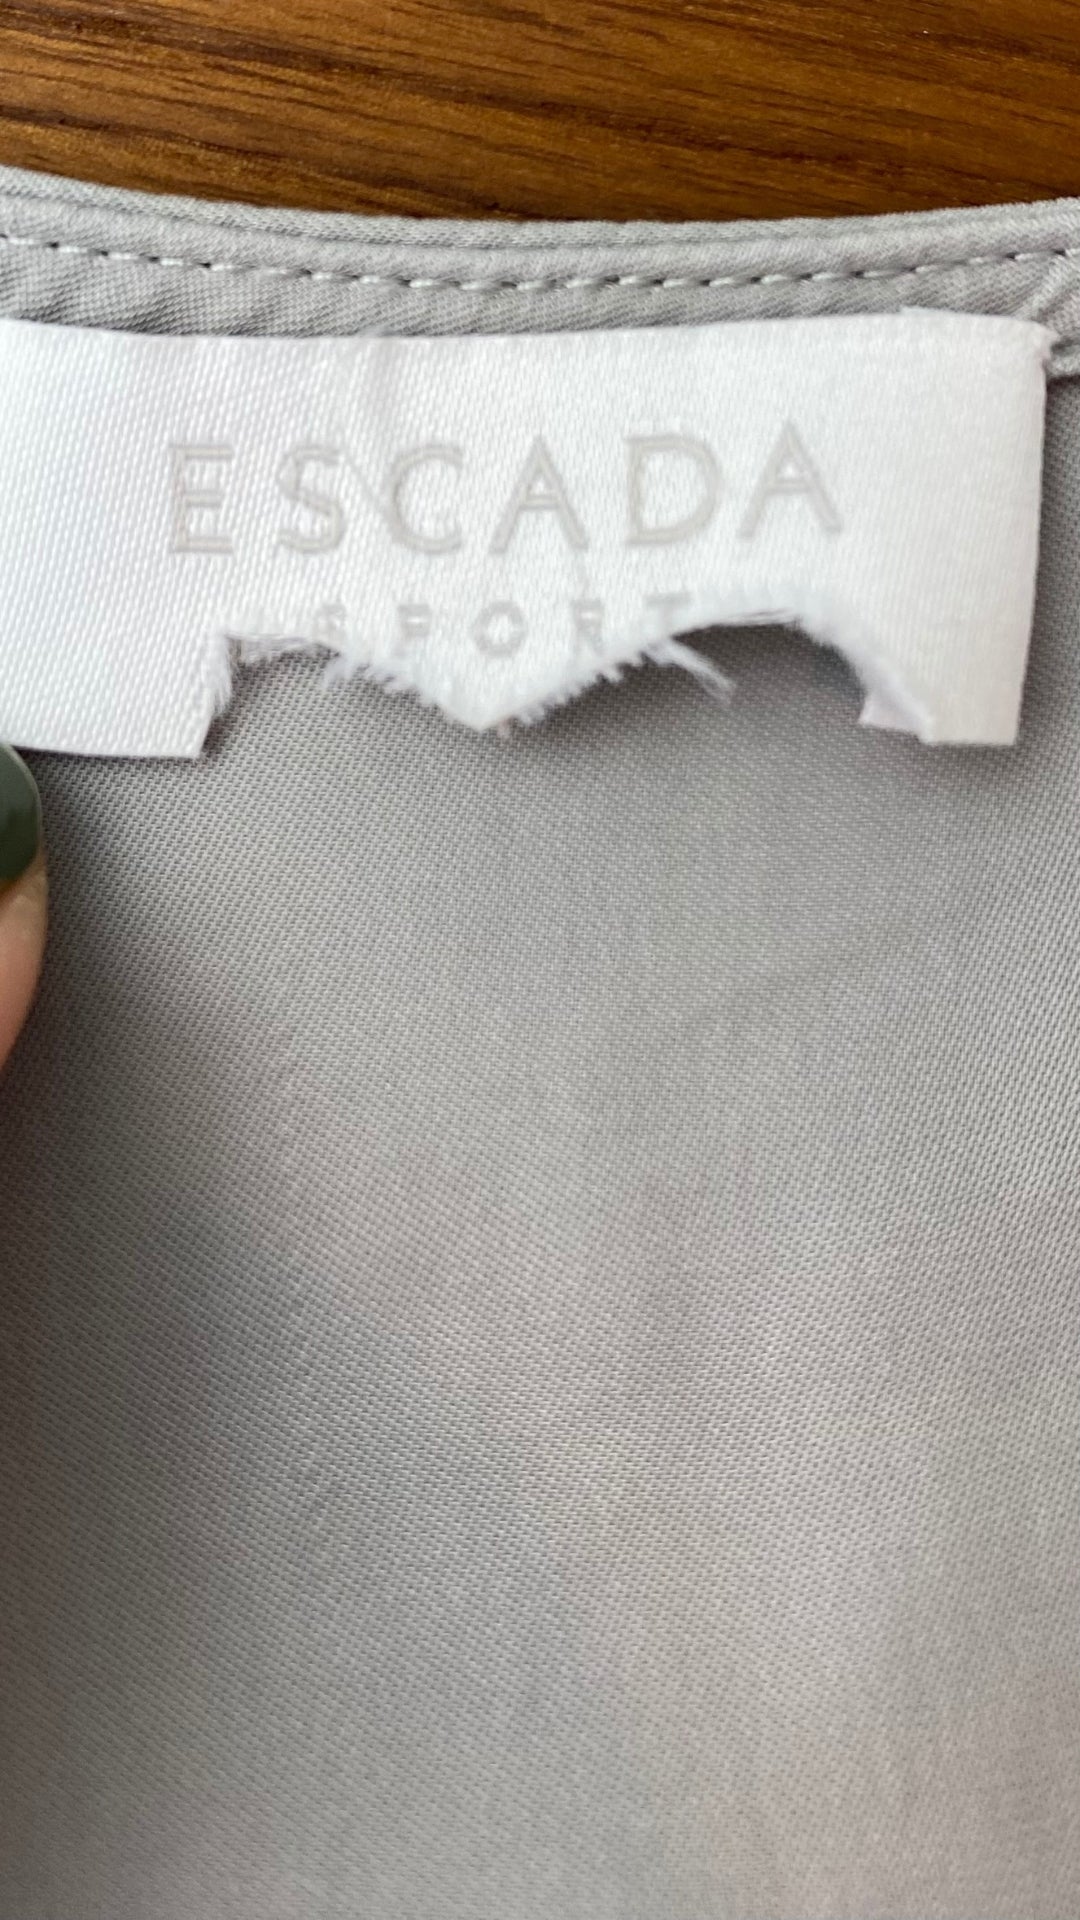 Blouse fluide grise boutons bijoux Escada Sport, taille estimée à s-m. Vue de l'étiquette.